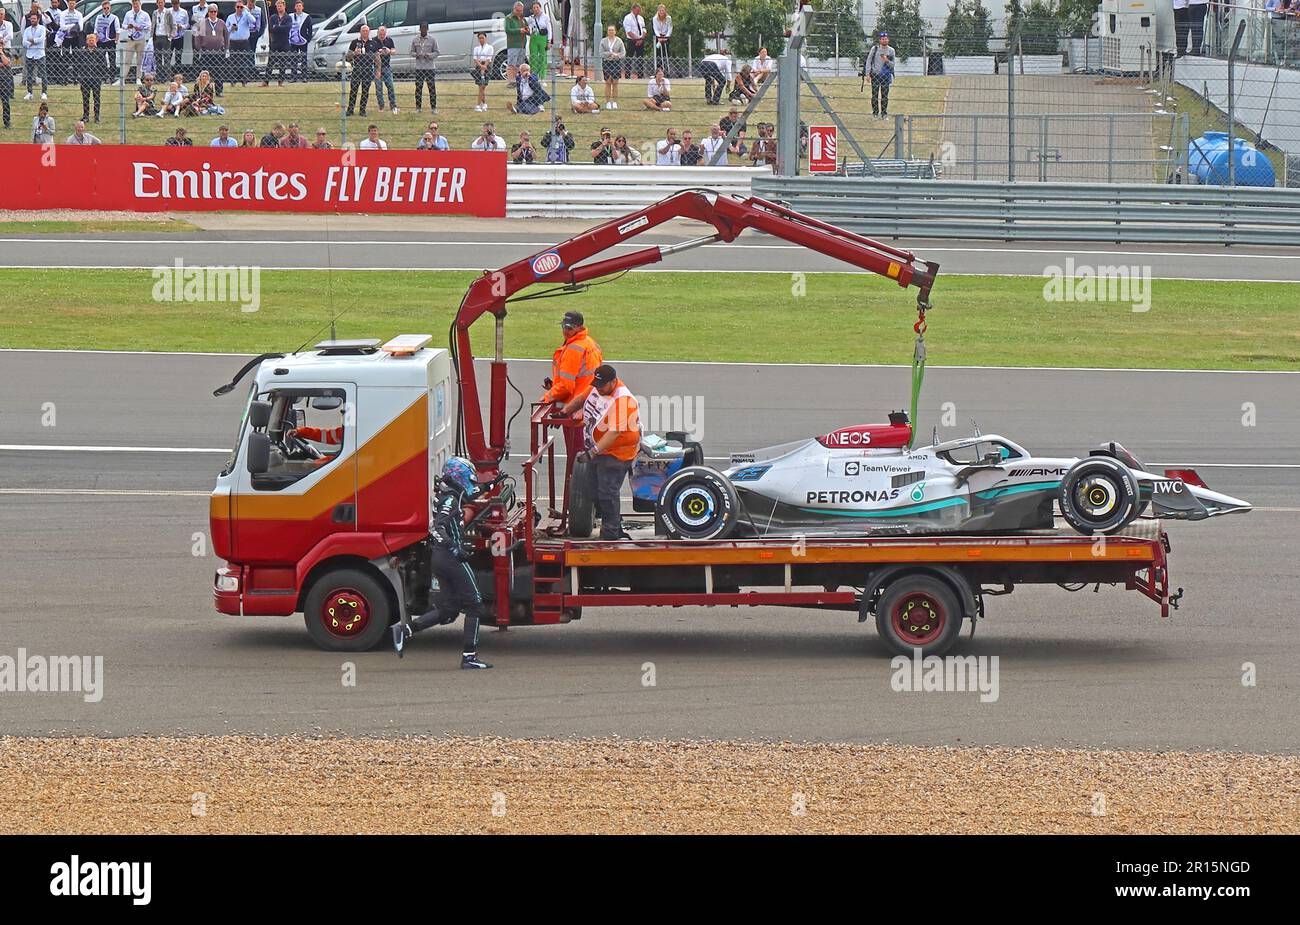 La Mercedes 63 de George Russell s'est écrasée F1 voiture GP, en cours de récupération juillet 2022 Silverstone, afrer Zhou Guanyu / Pierre Gasly , collision Banque D'Images